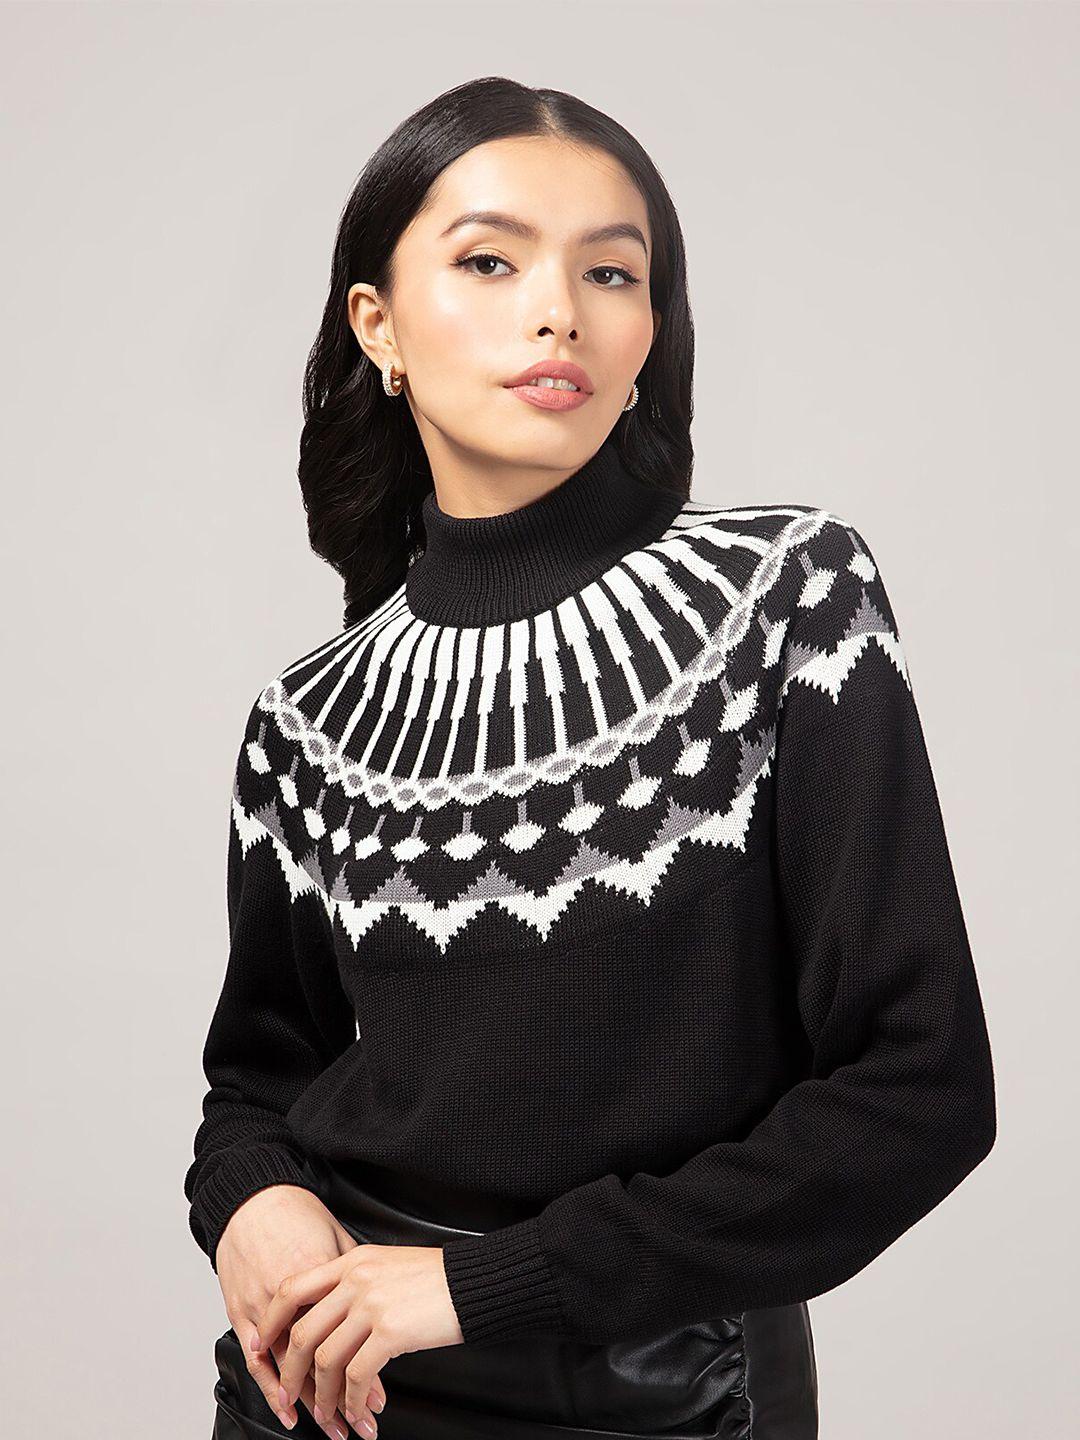 20dresses women black & white jacquard turtle neck sweater